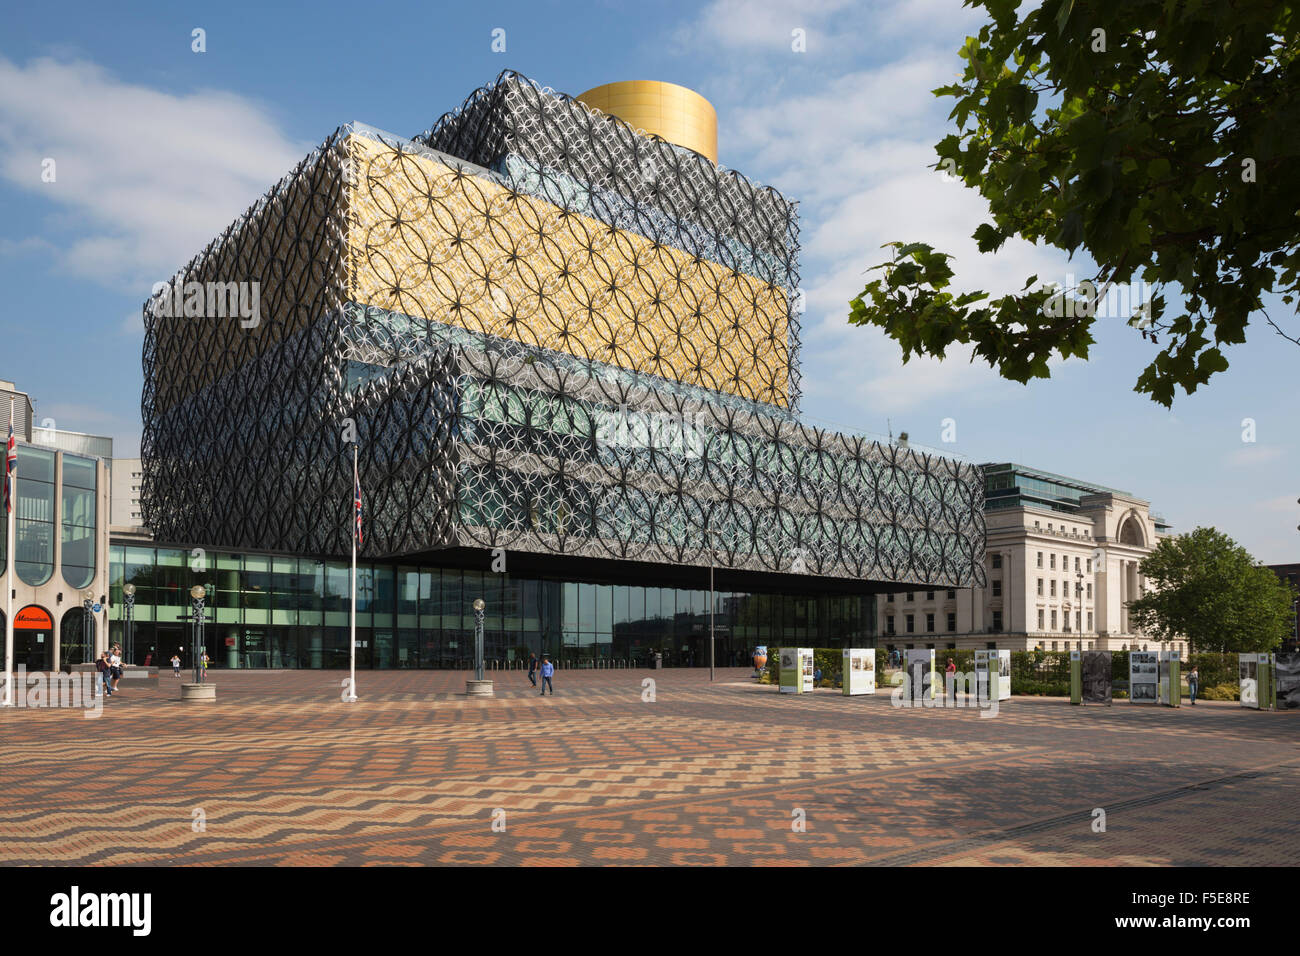 La Bibliothèque de Birmingham, Centenary Square, Birmingham, West Midlands, Angleterre, Royaume-Uni, Europe Banque D'Images